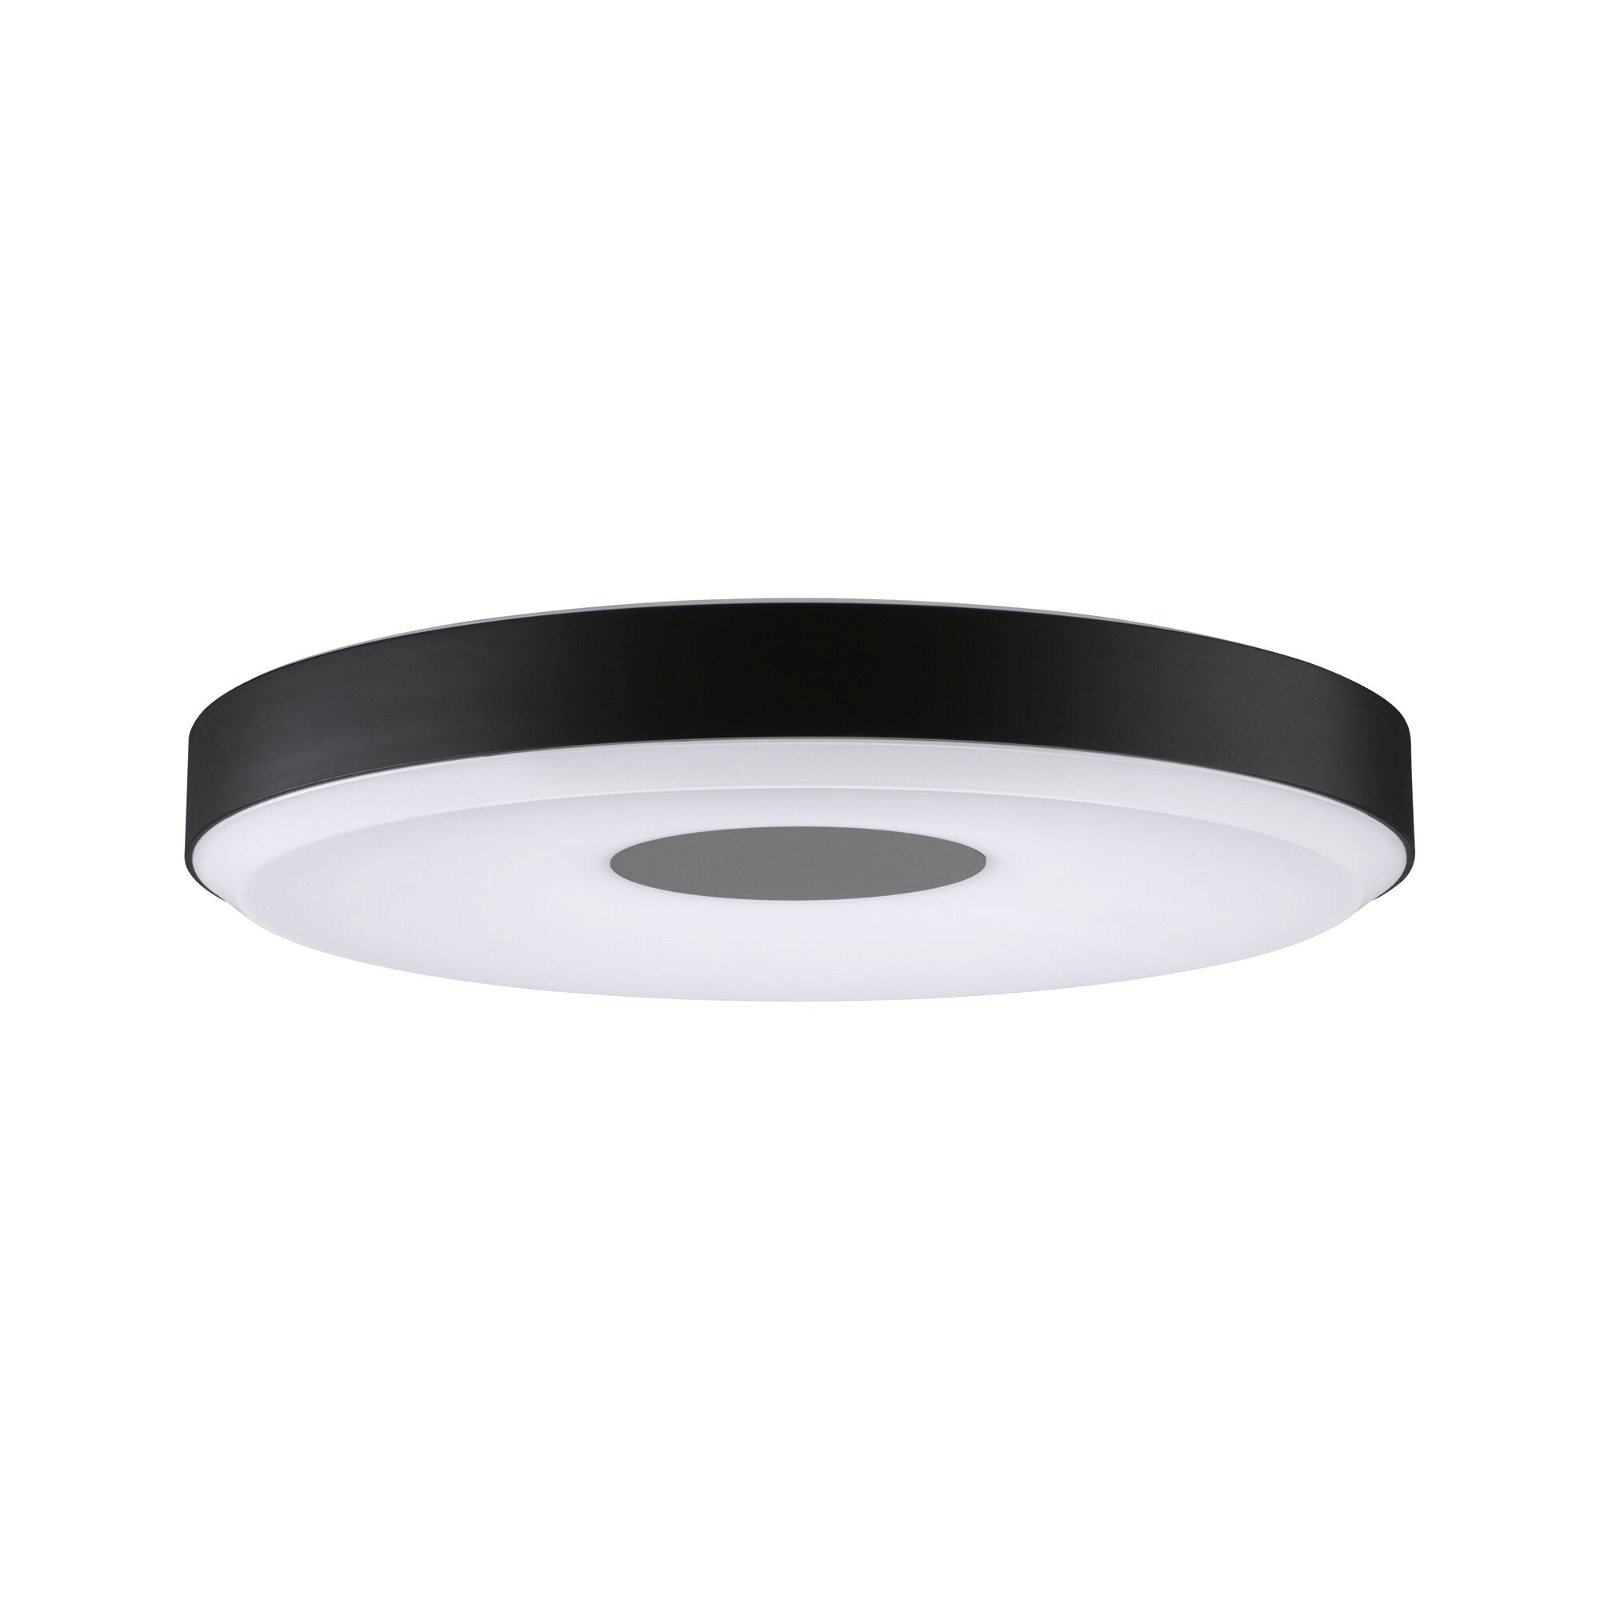 PAULMANN LED stropní svítidlo Smart Home Zigbee Puric Pane Effect 2700K / 230V 16 / 1x1,5W stmívatelné černá/šedá -